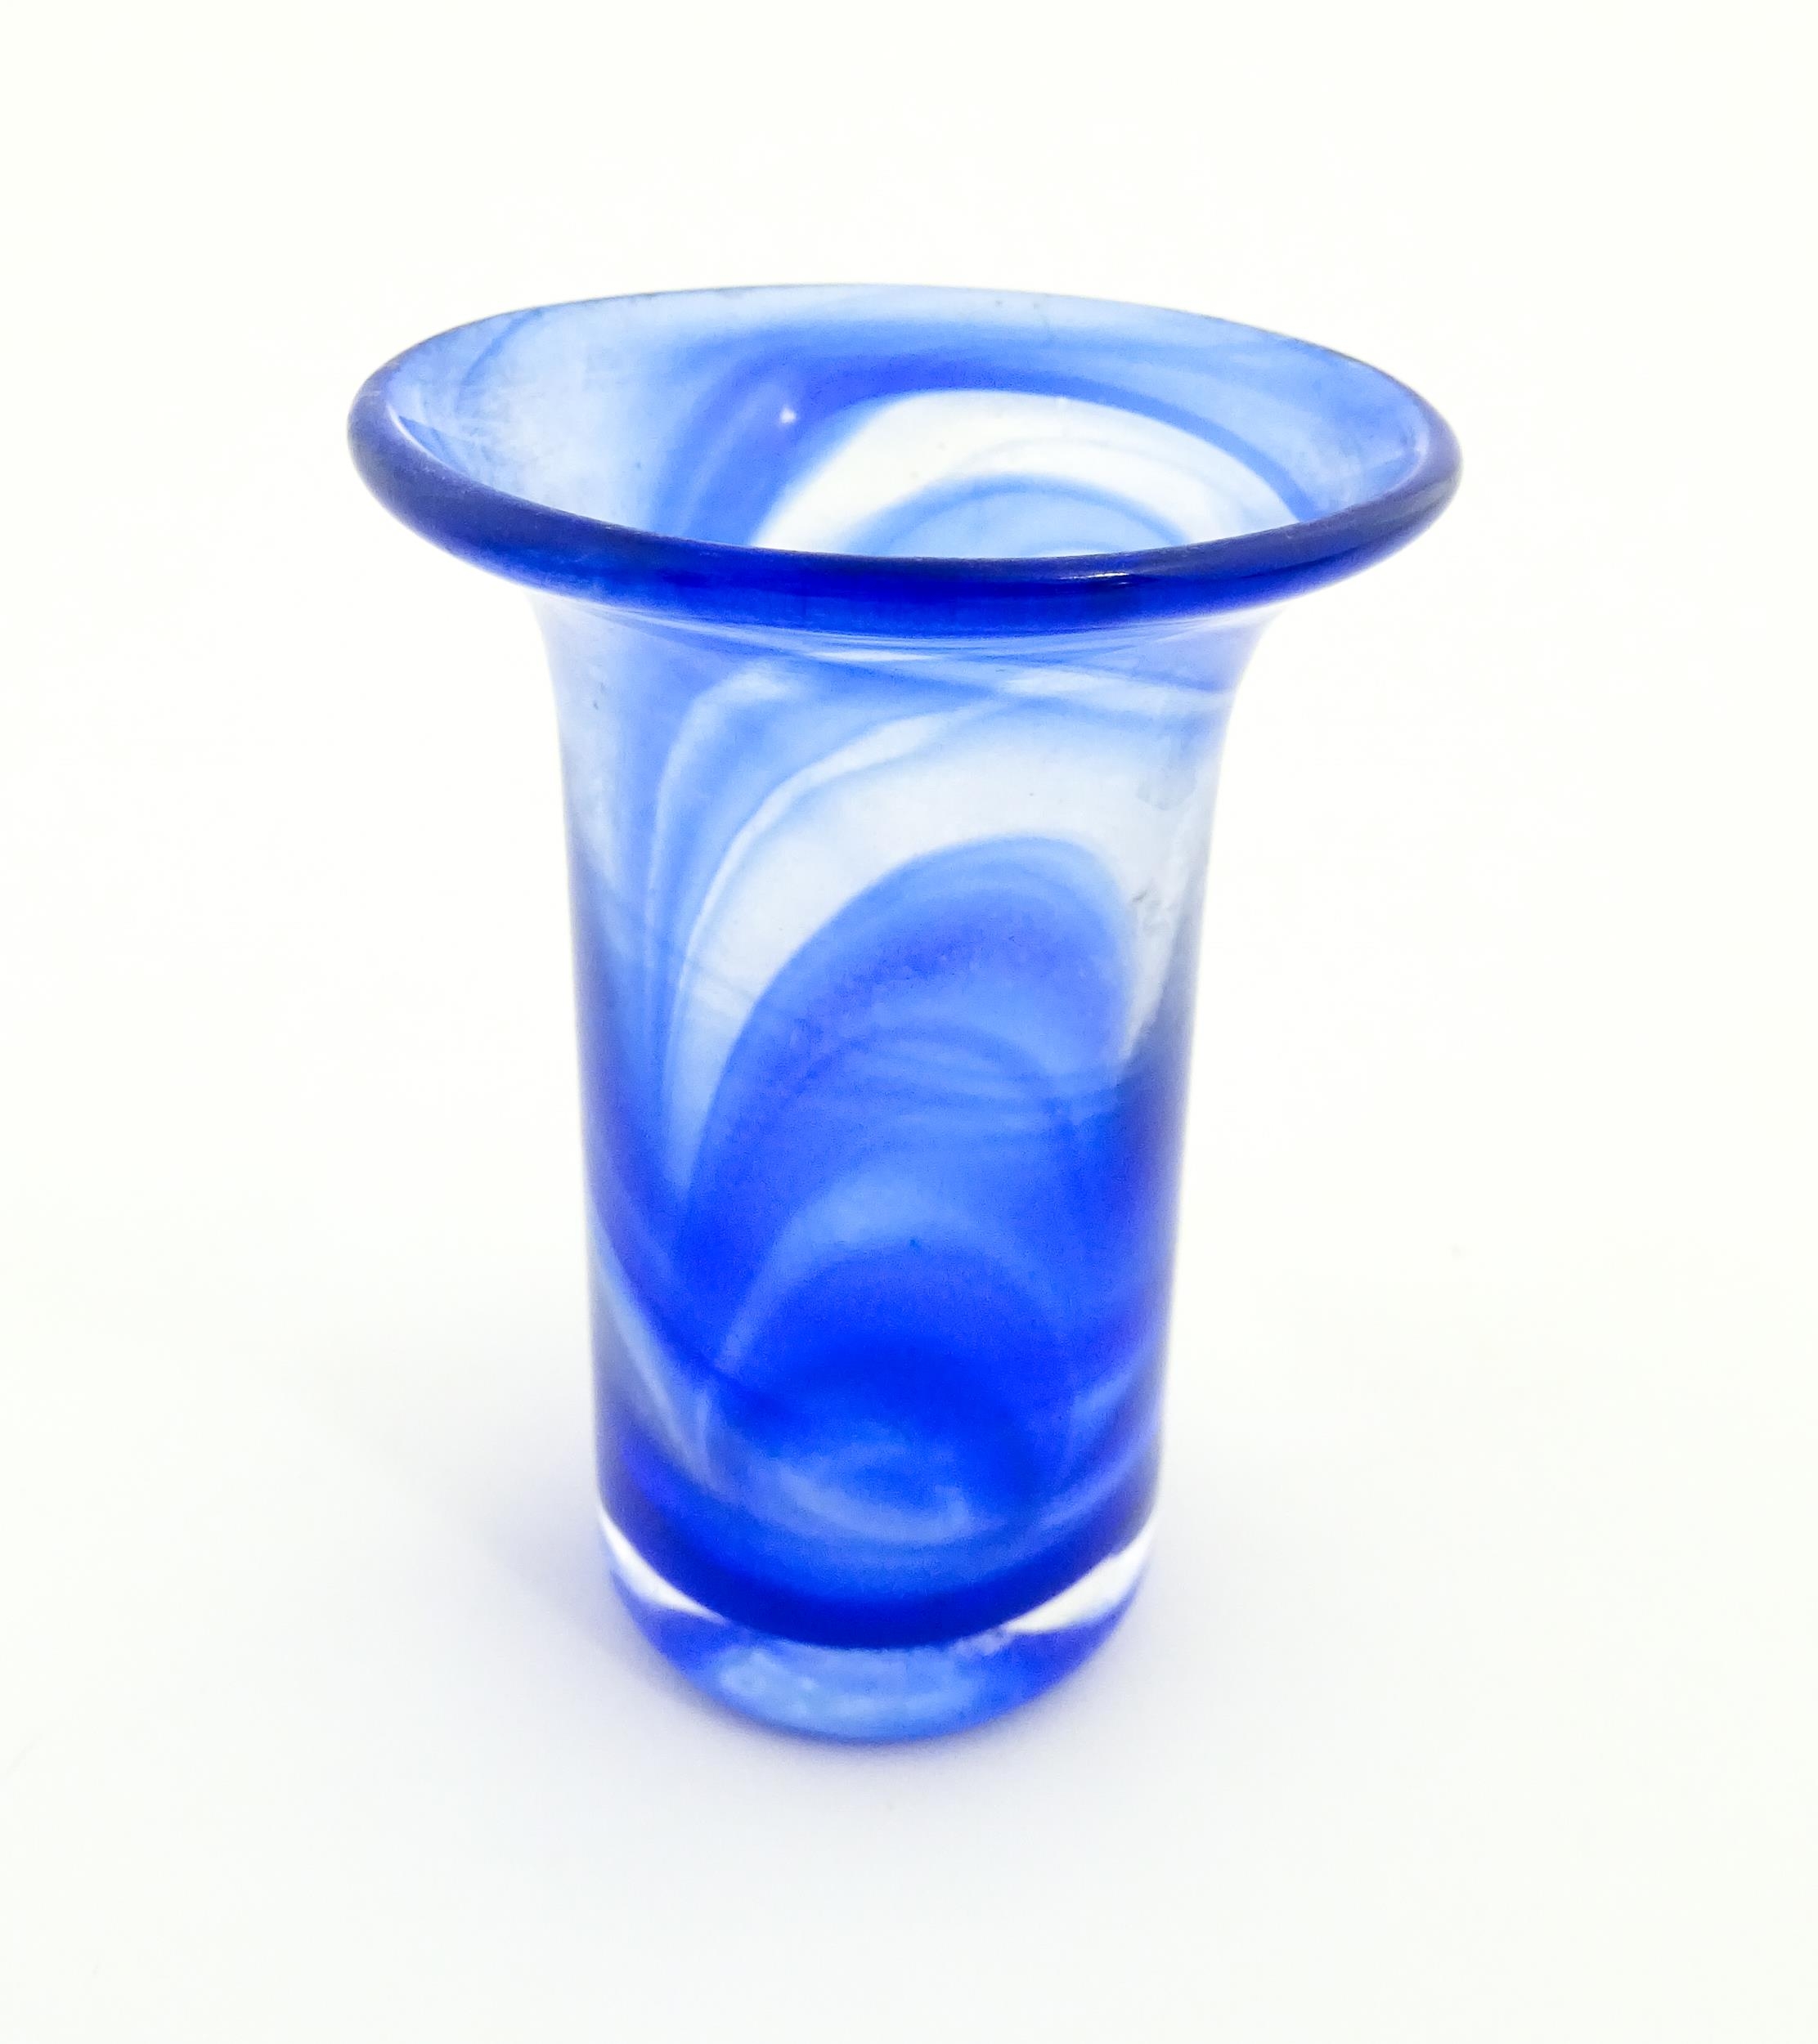 A Swedish Vas Vitreum blue glass vase with flared rim, signed under Vas Vitreum Sweden. Approx. 4 - Image 3 of 6